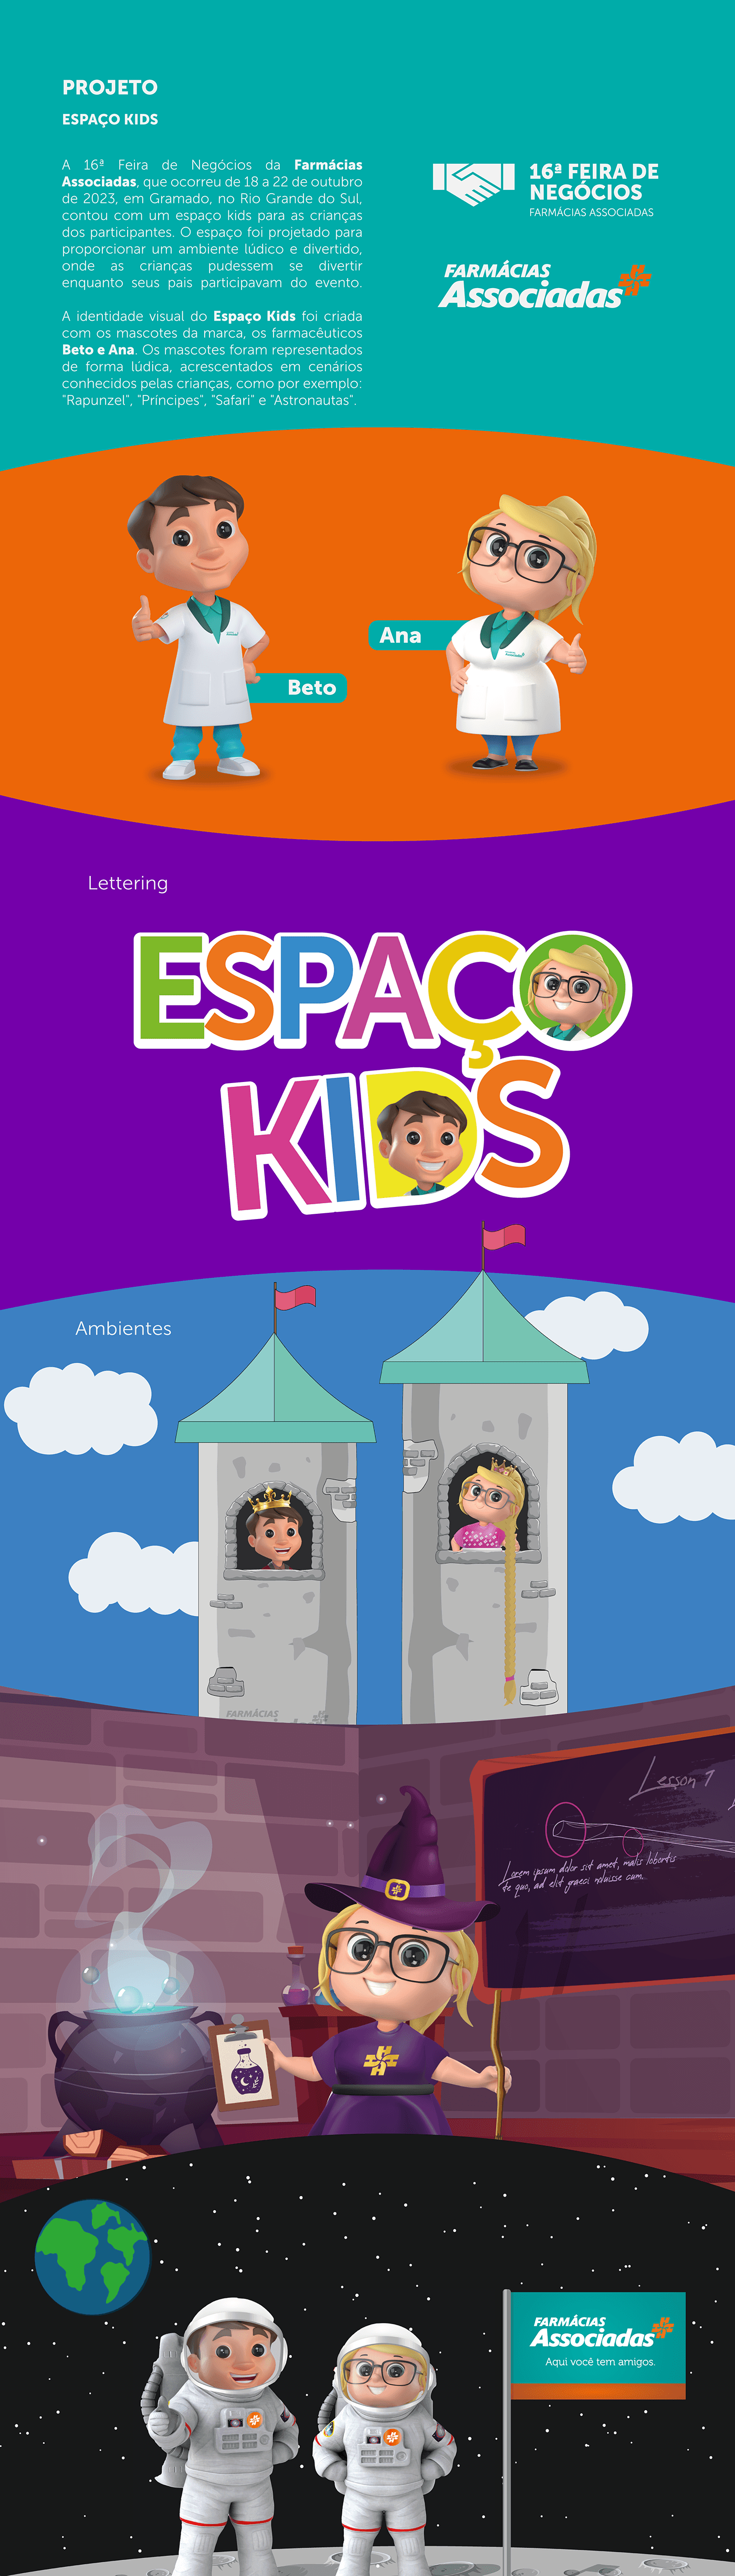 espaço kids kids